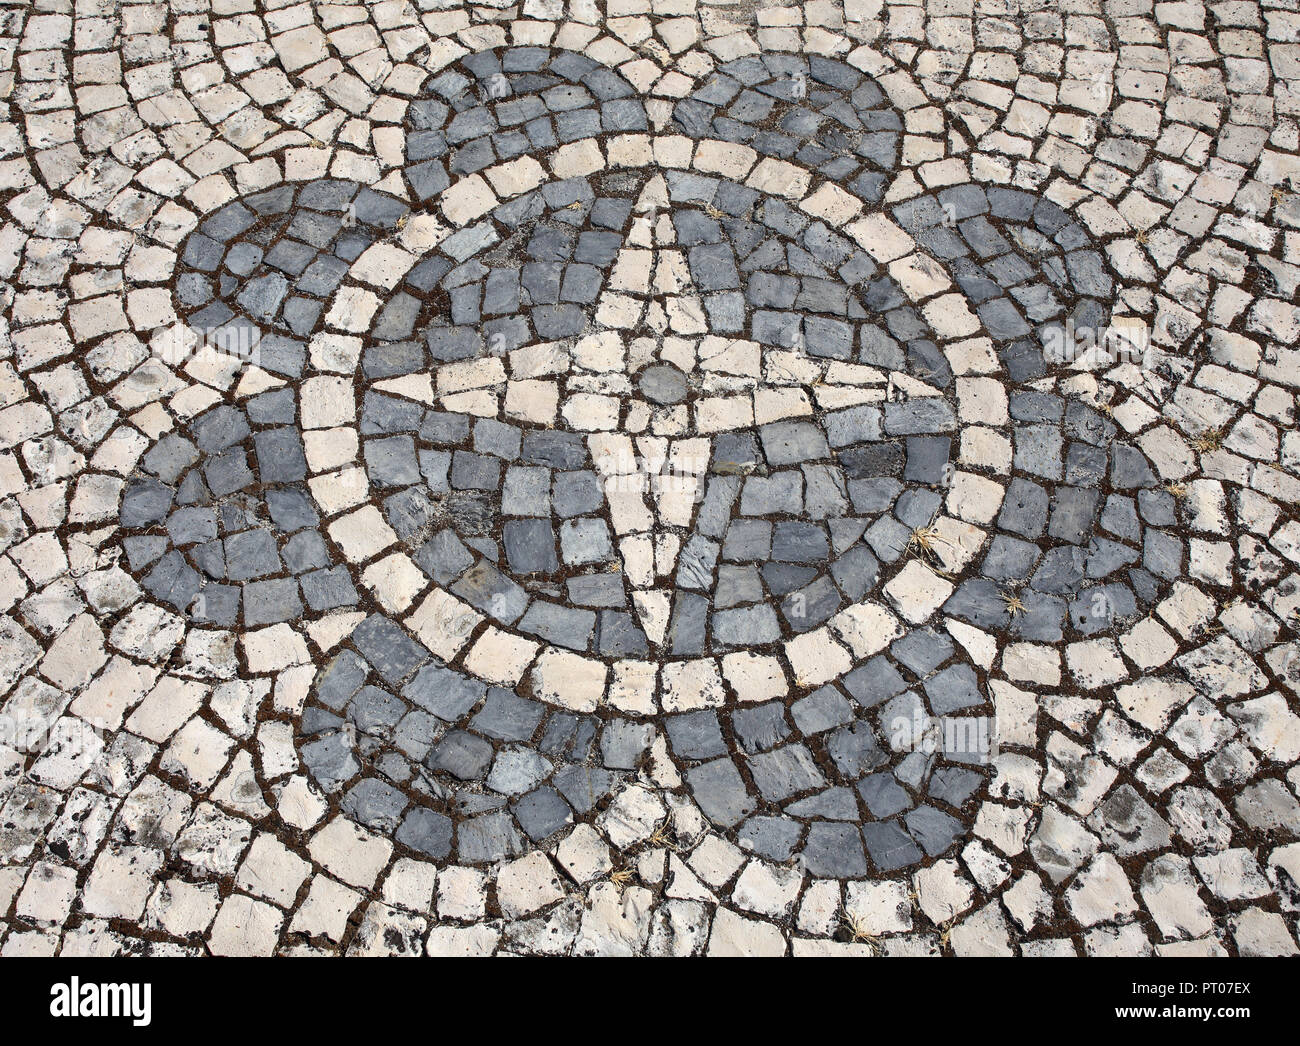 Noir et blanc typique, le portugais 'calcada' mosaic cobblestone paving représentant une boussole et d'une flore design. Lisbonne, Portugal. Banque D'Images